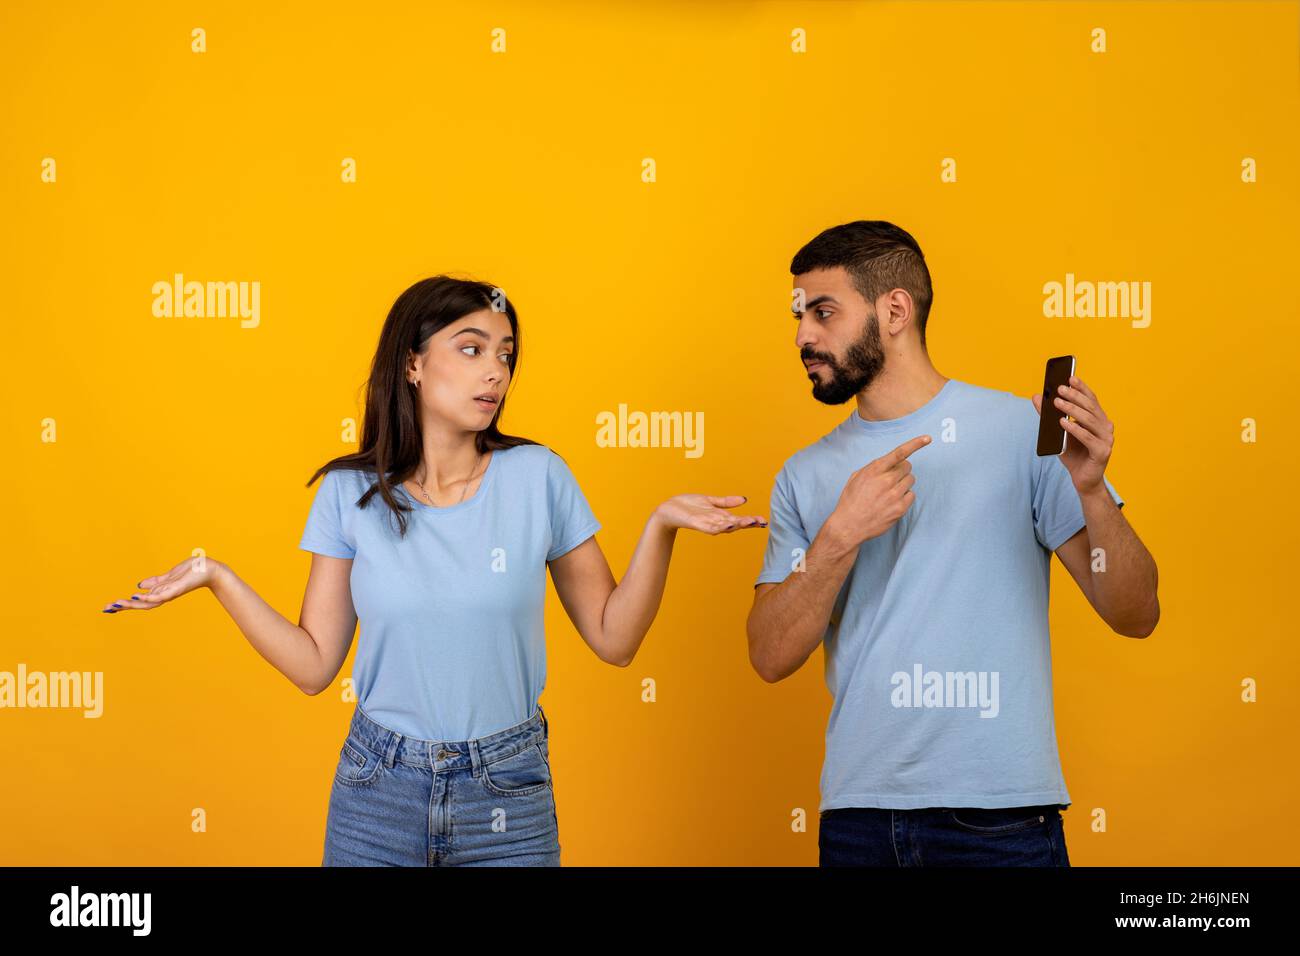 Une autre vie en ligne.Homme arabe en colère vérifiant son téléphone de petite amie, demandant à la femme d'expliquer, dame se propageant les mains Banque D'Images